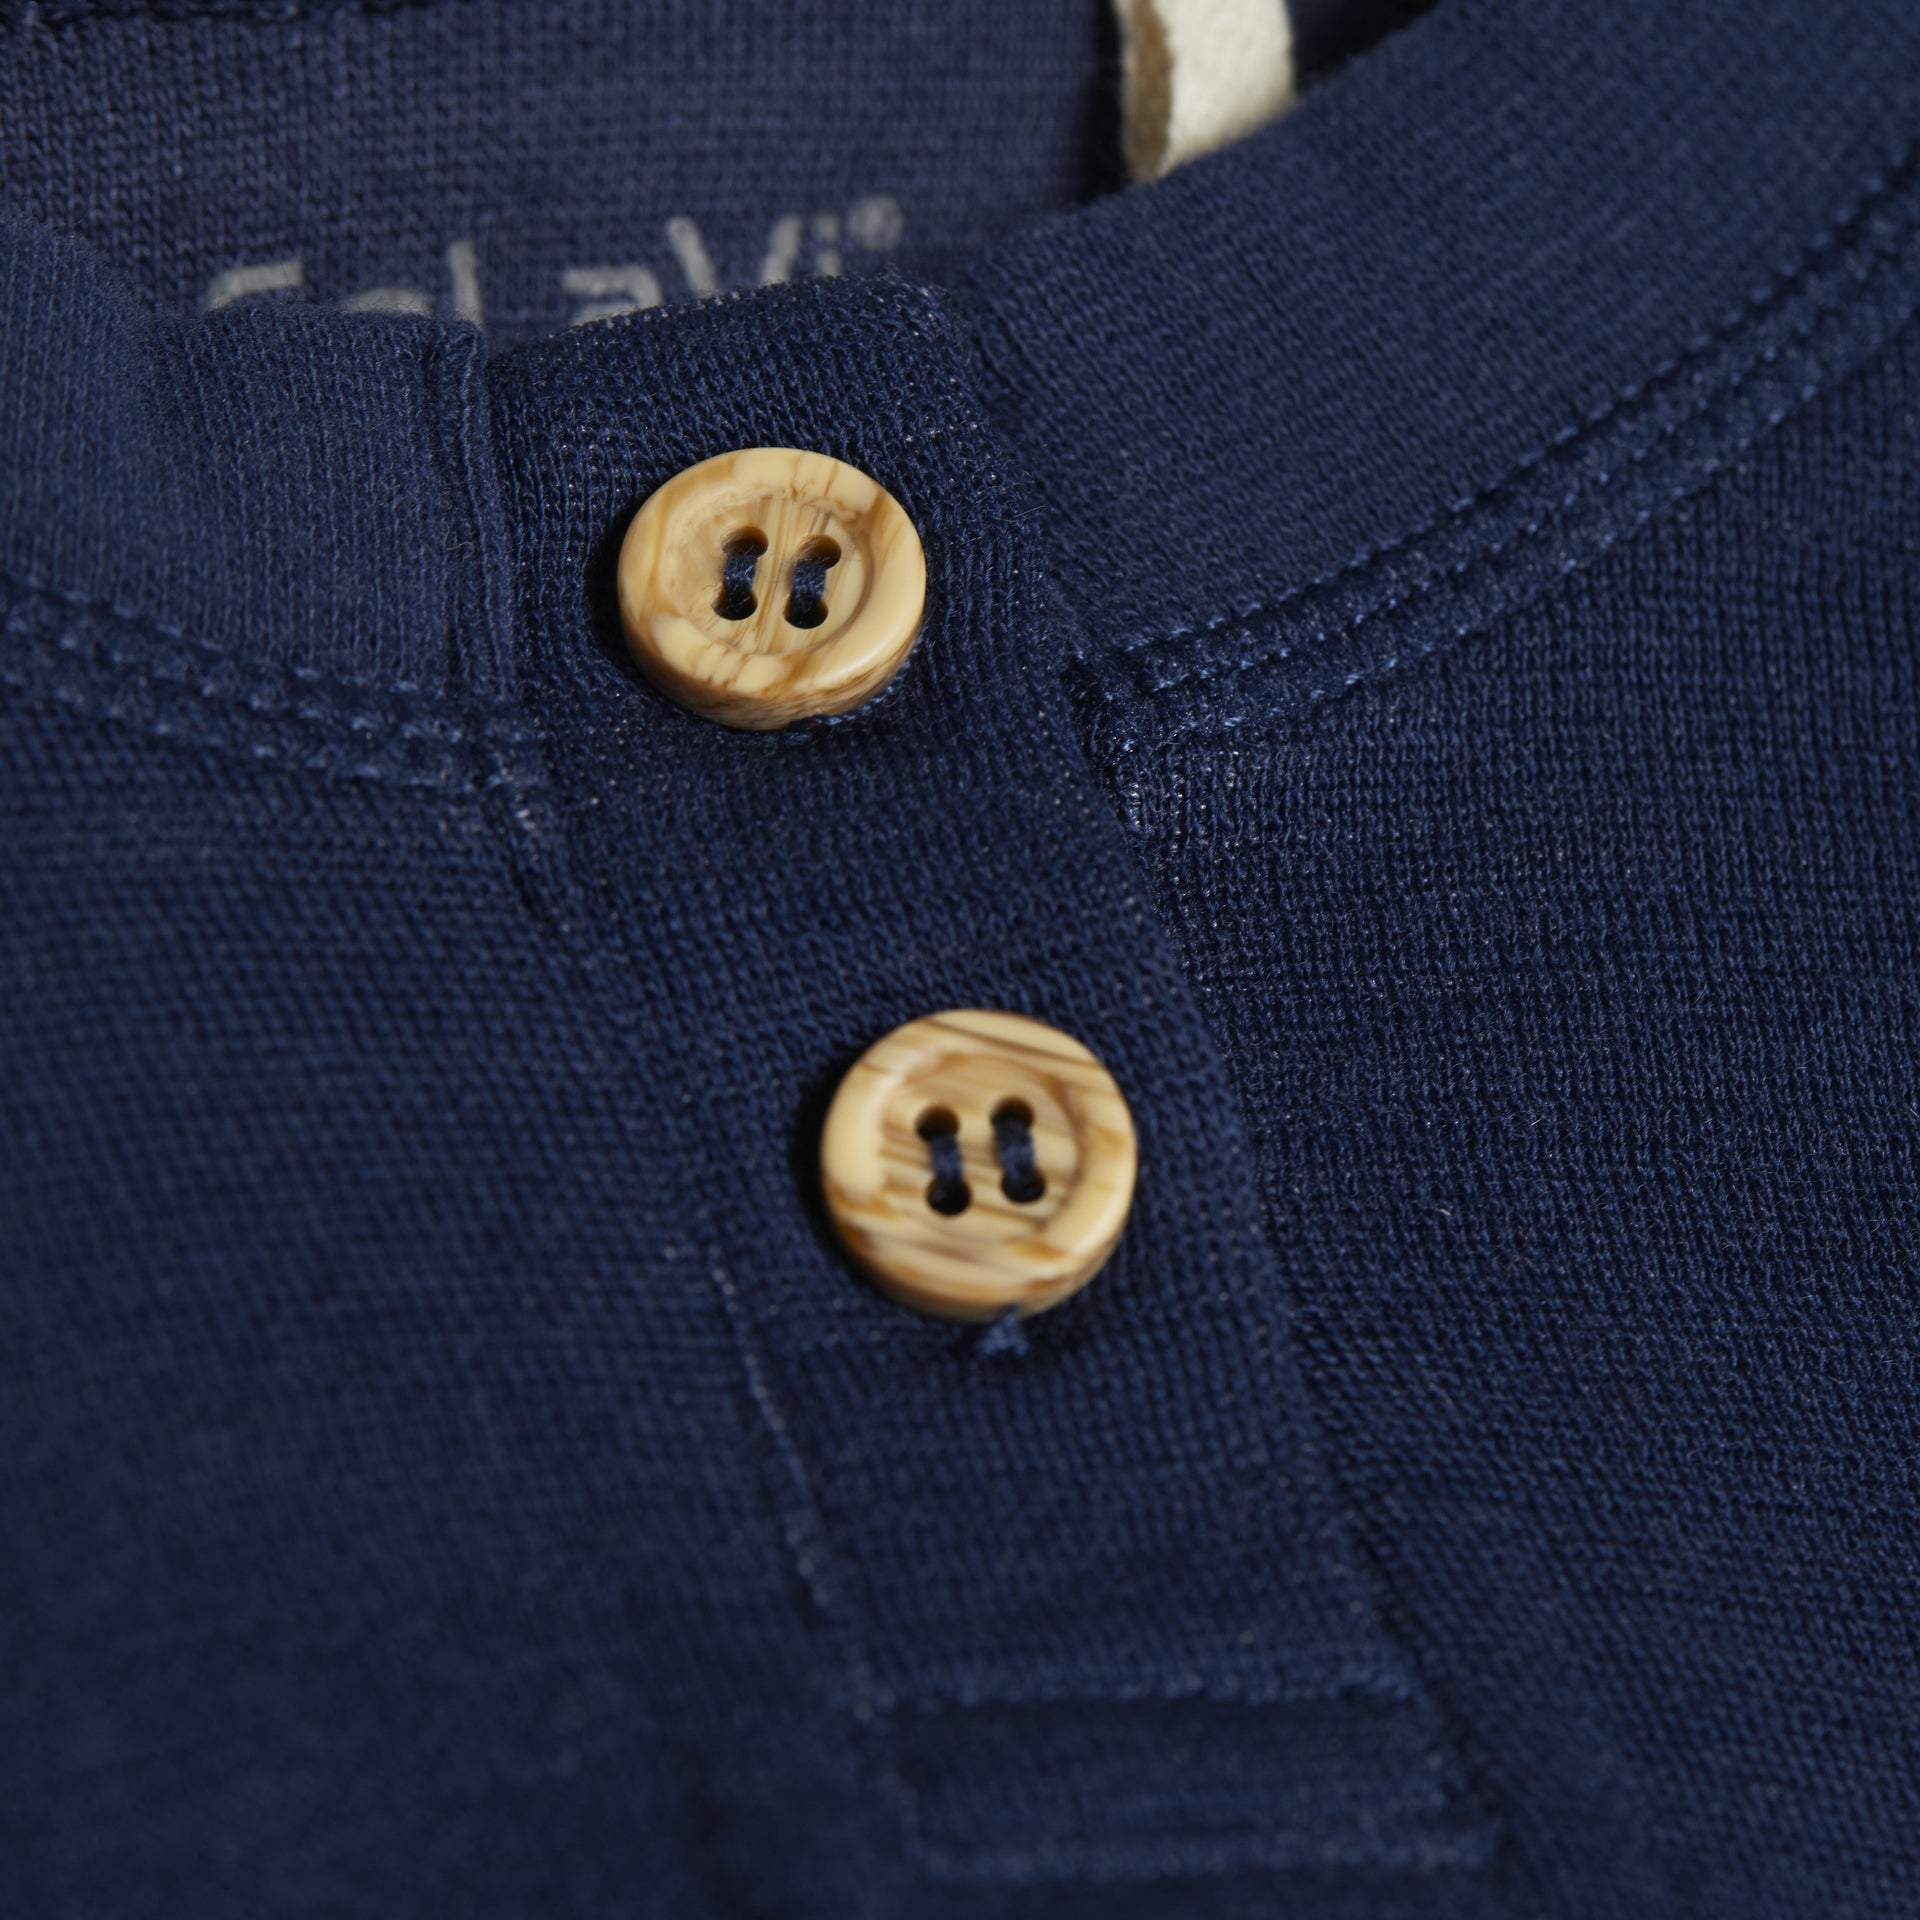 CeLaVi Langarm-Shirt Wolle/Bambusviskose - dunkelblau mit Knöpfen - Familienbande